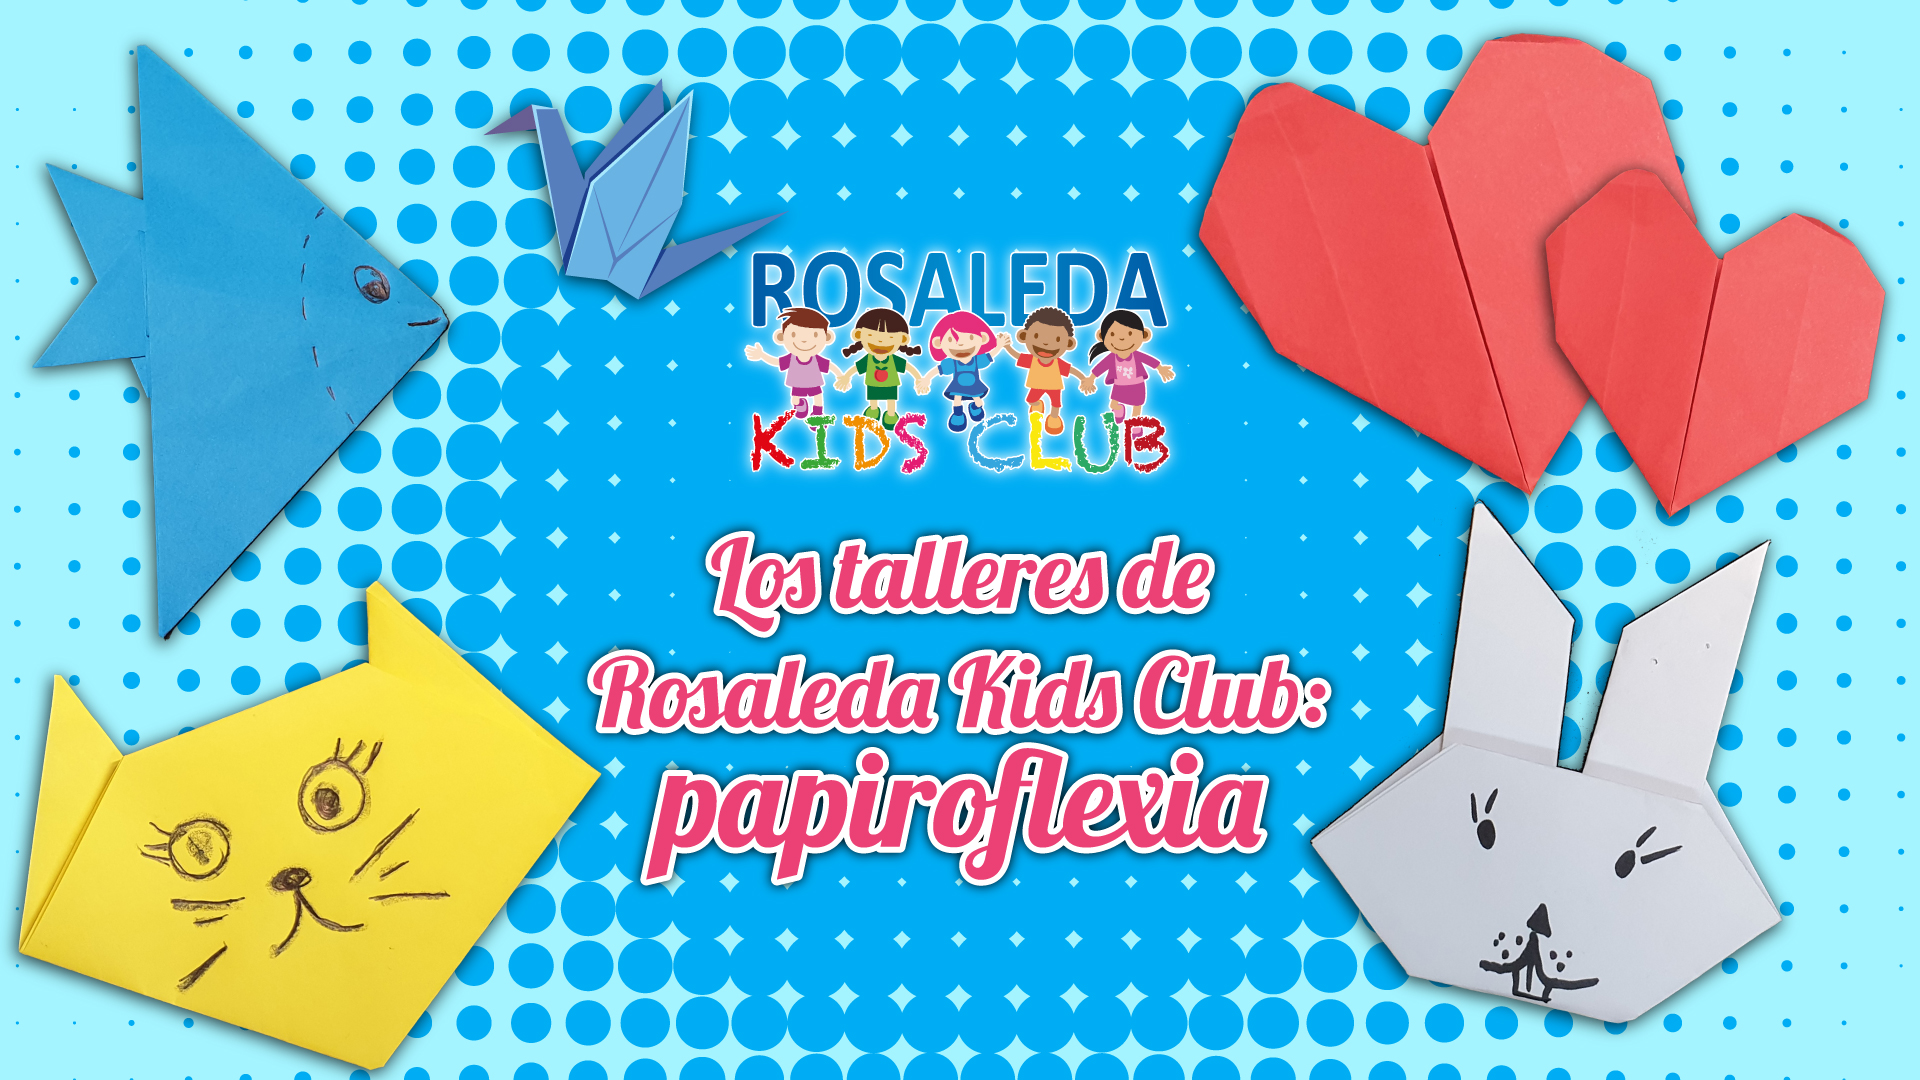 Rosaleda Kids Club: papiroflexia